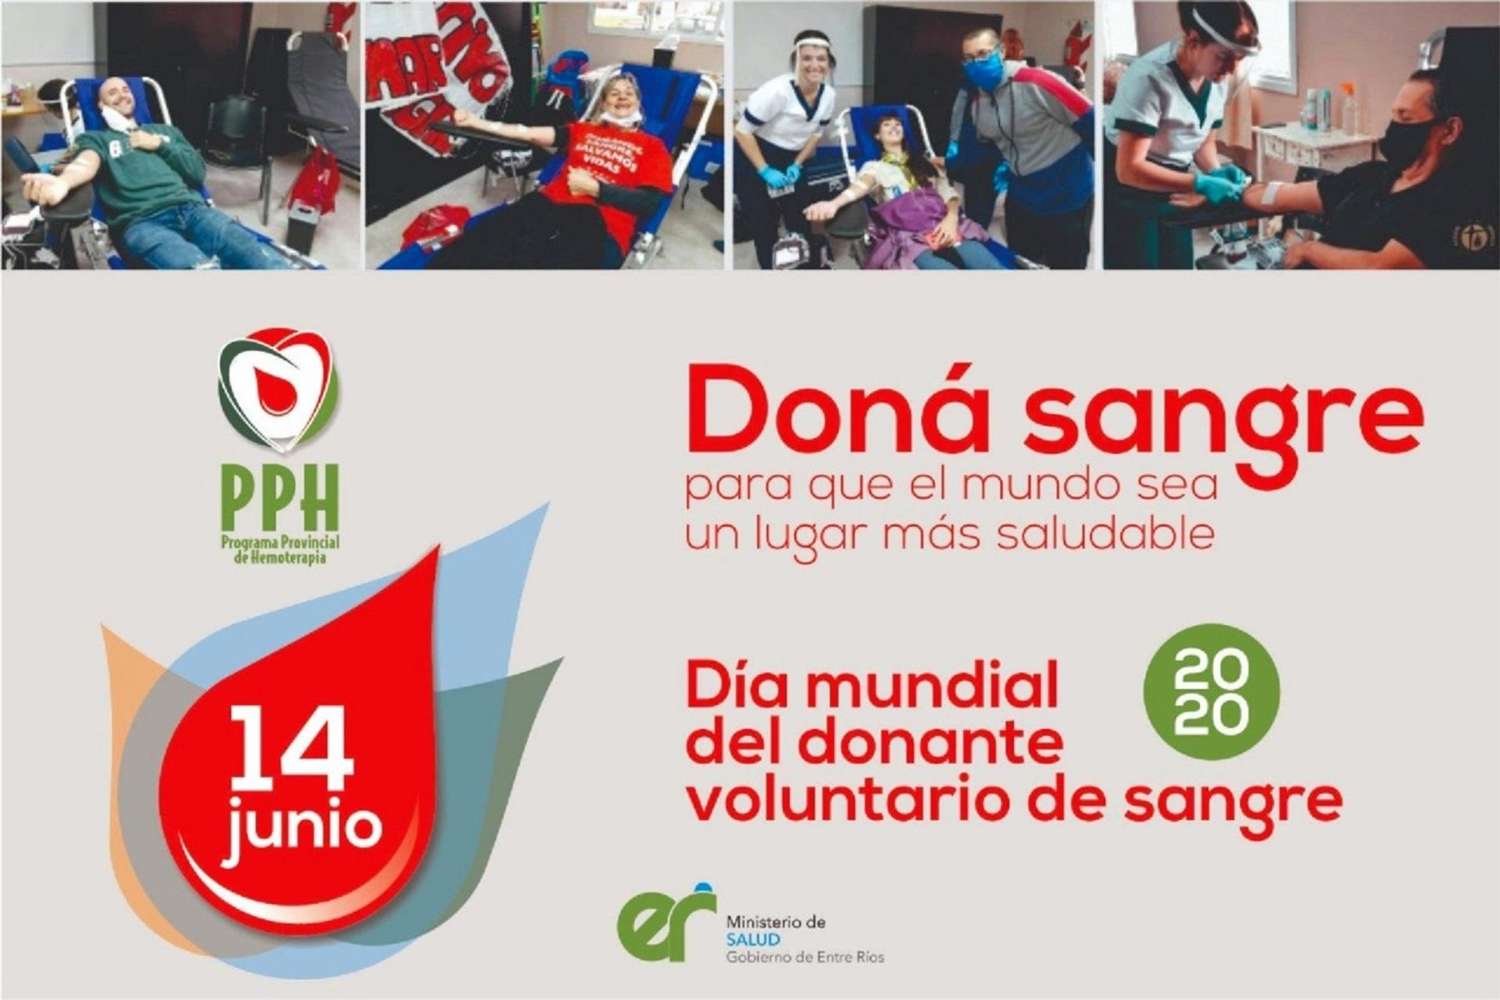 Salud garantiza la donación voluntaria de sangre segura